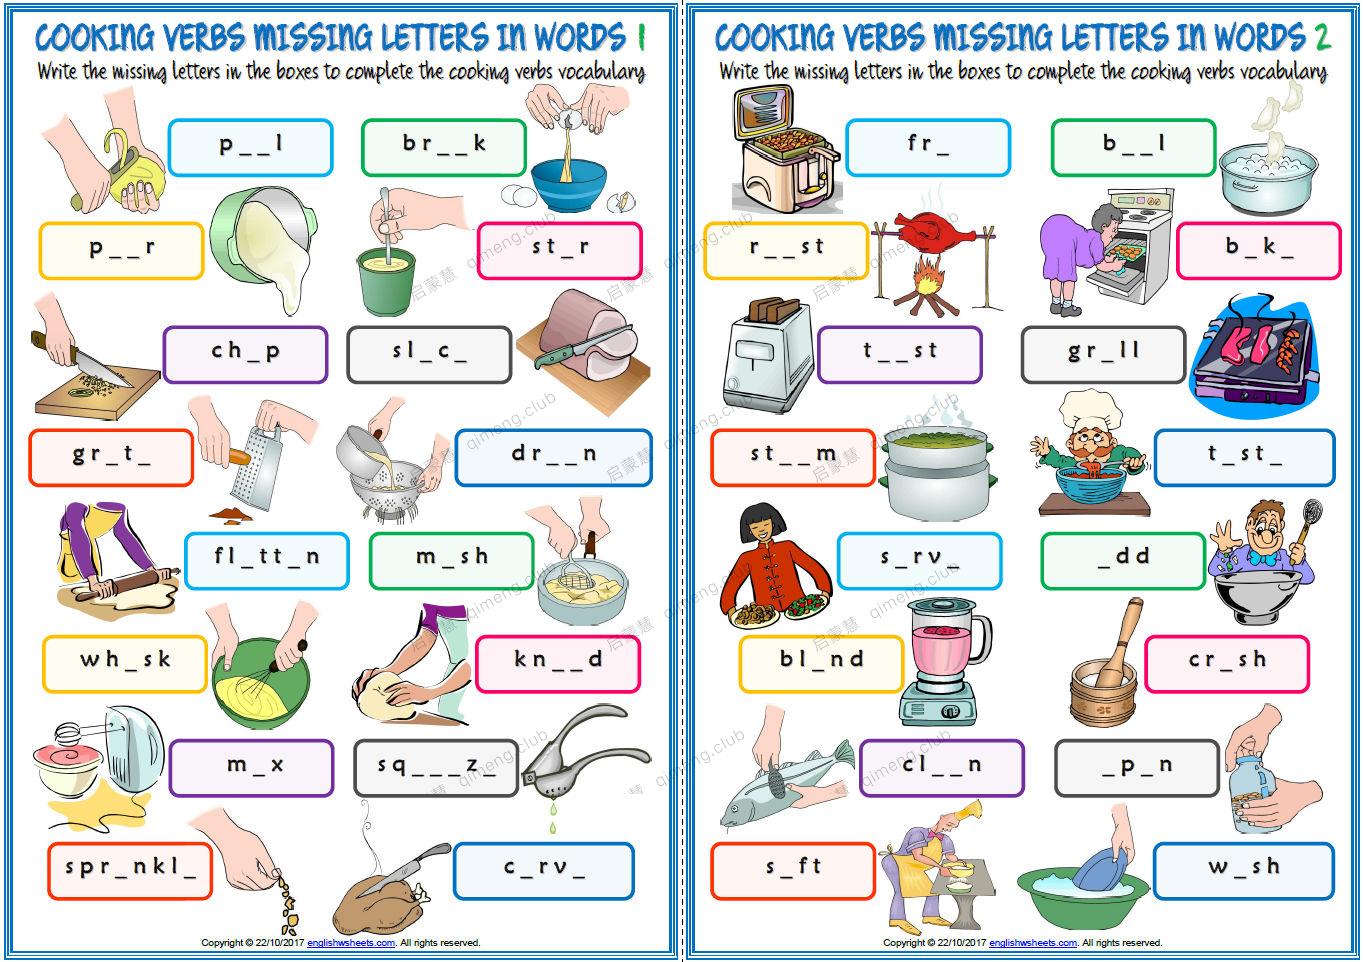 厨房烹饪动词词汇篇练习纸《cooking verbs vocabulary》通过游戏连线等记忆单词